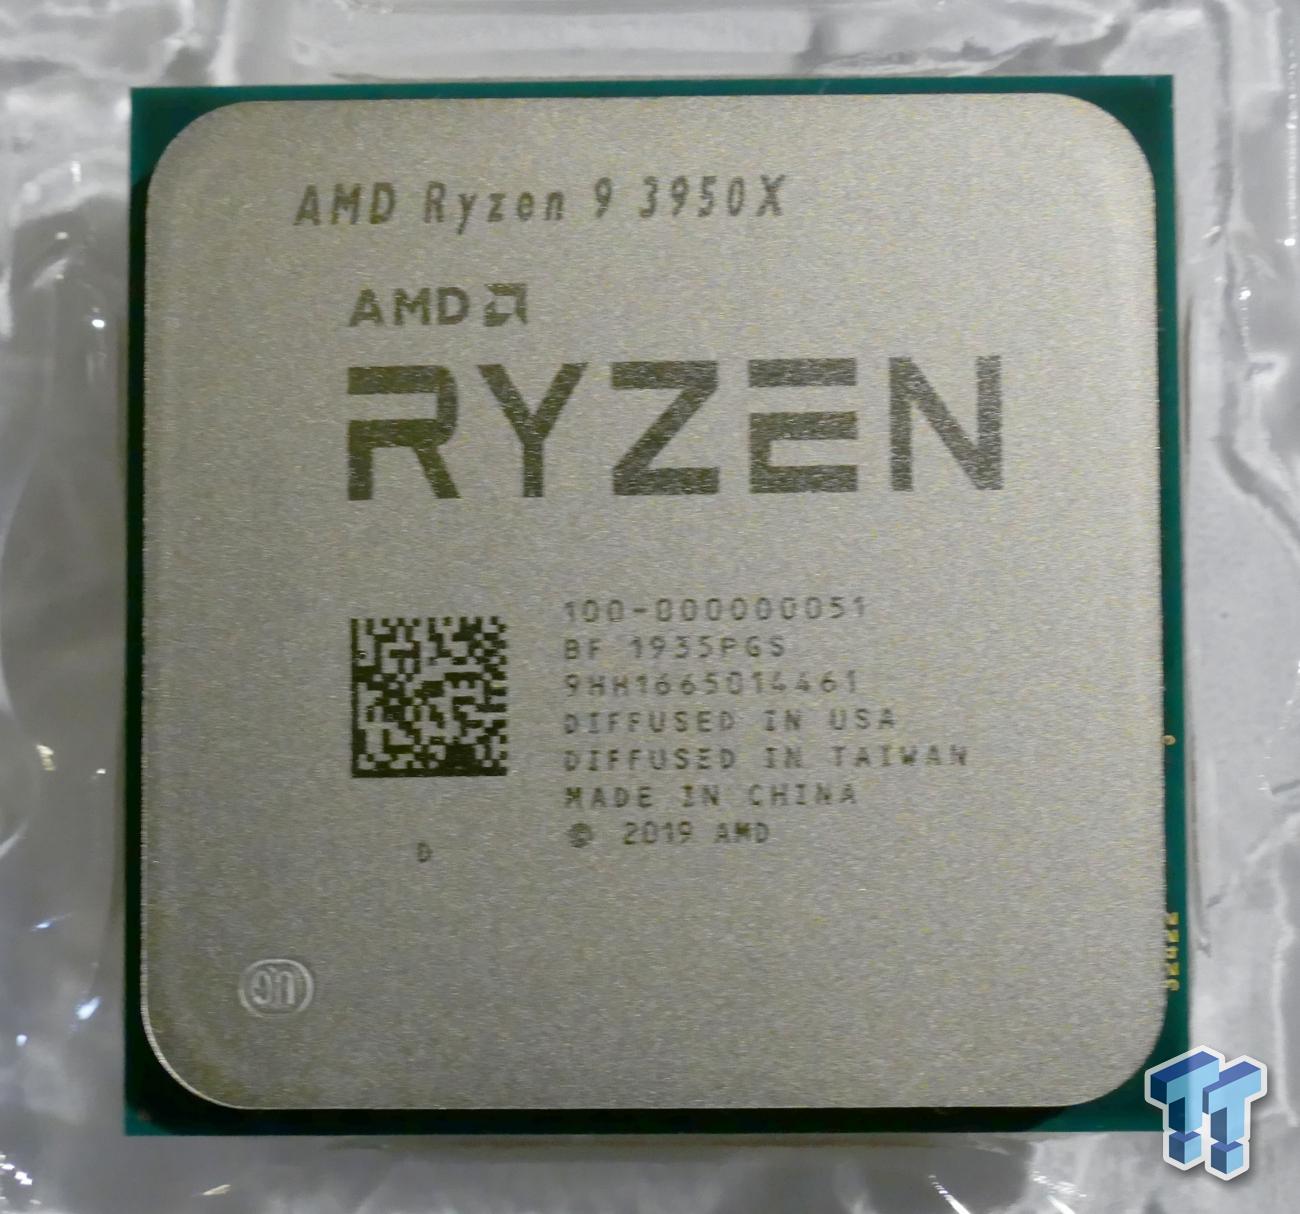 AMD Ryzen 9 3950X (Zen 2) Processor Review